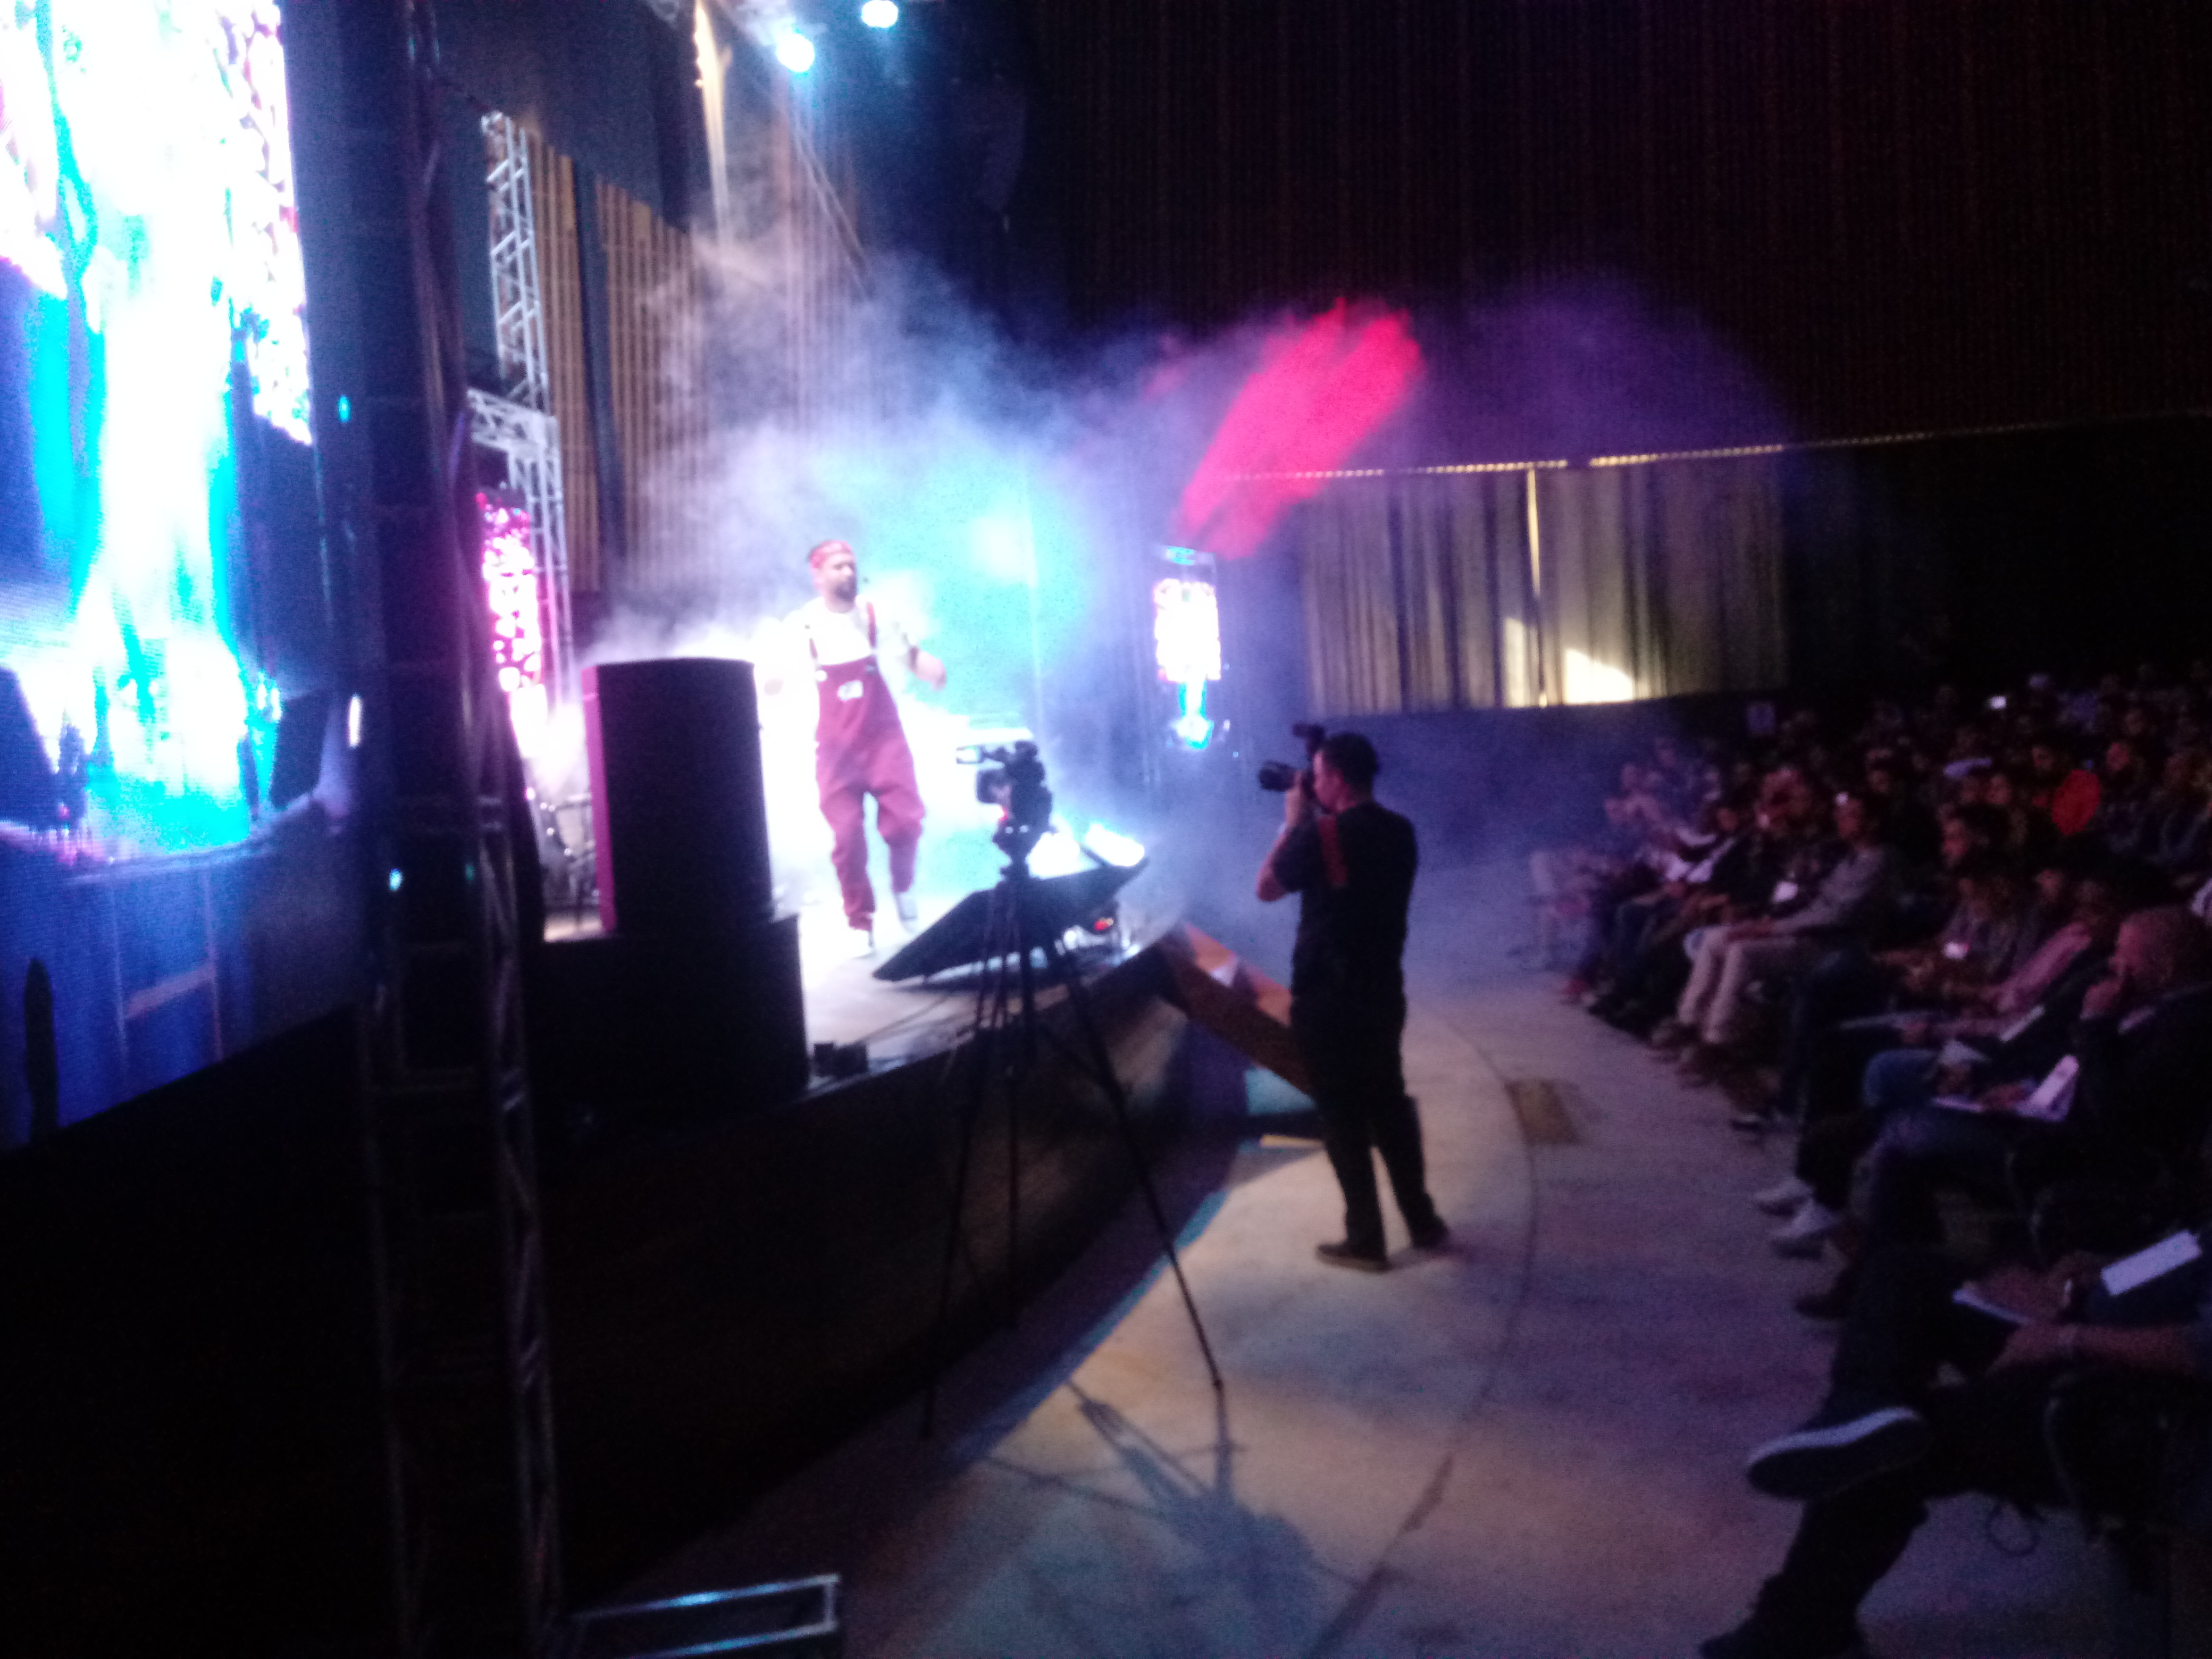 Artista se apresenta em palco, com efeito visual de gelo seco. Veste macacão vermelho, camiseta branca e usa bandana vermelha.